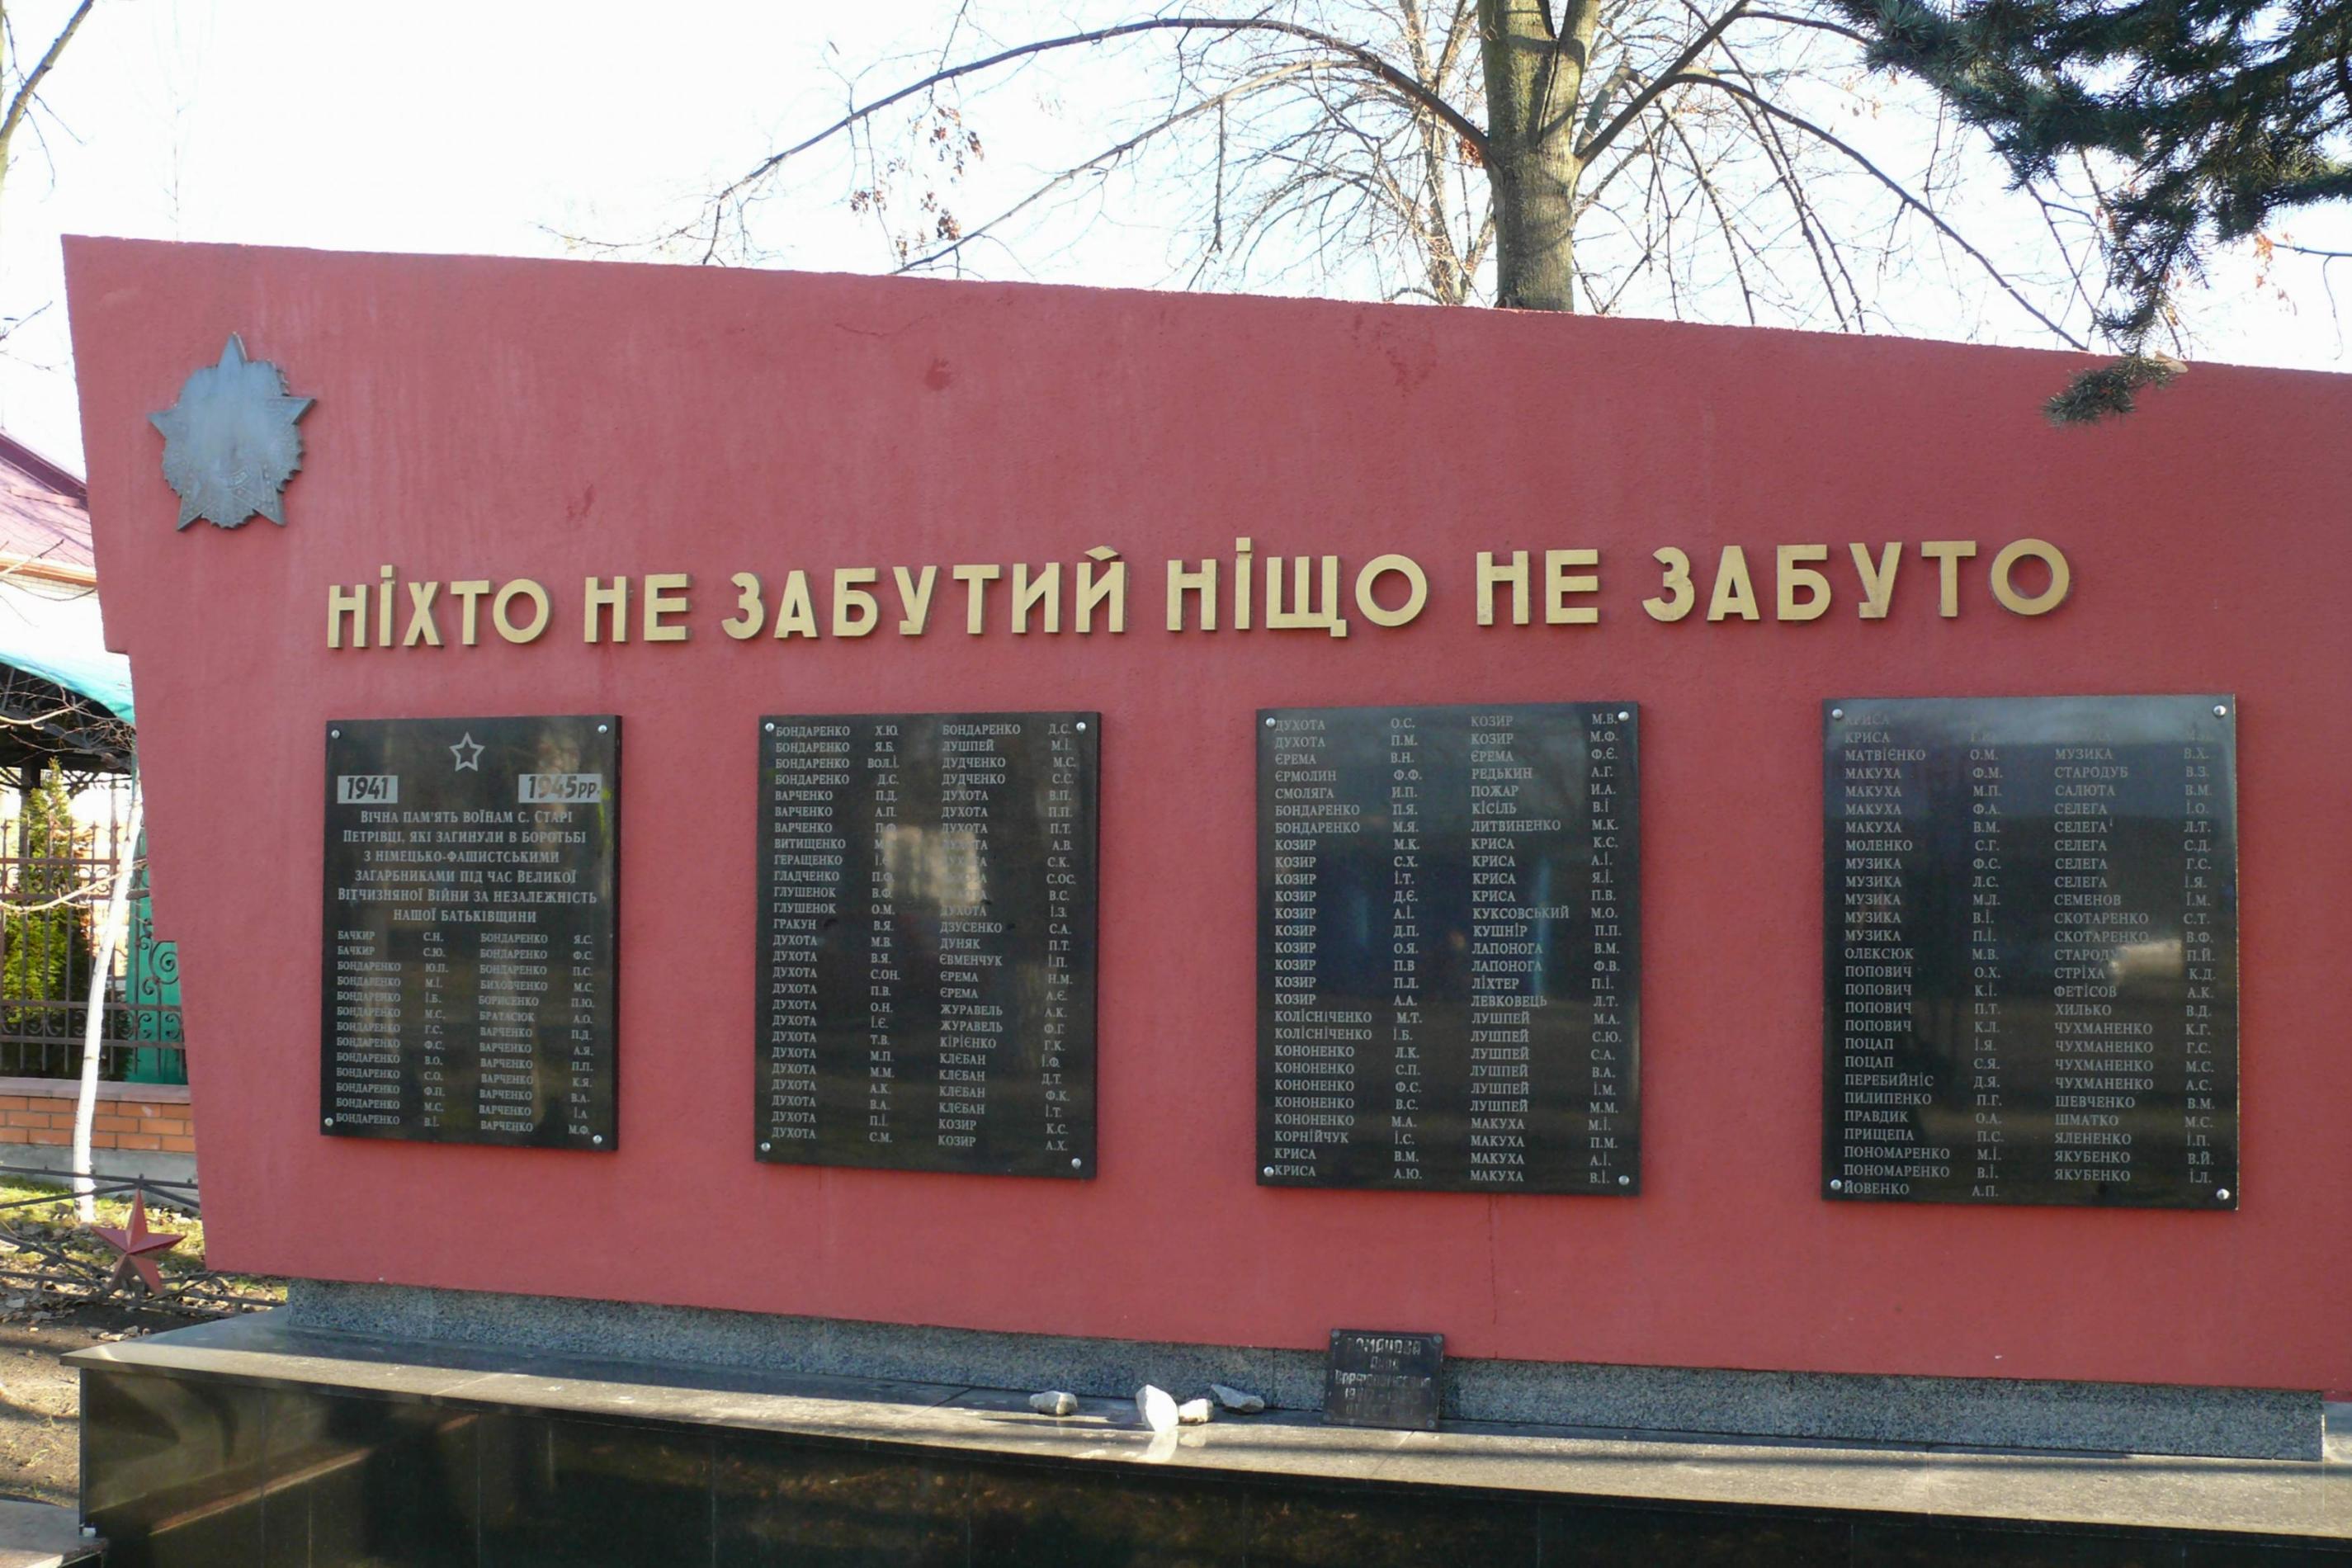 Памятник воинам-односельчанам в с. Старые Петровцы Вышгородского района